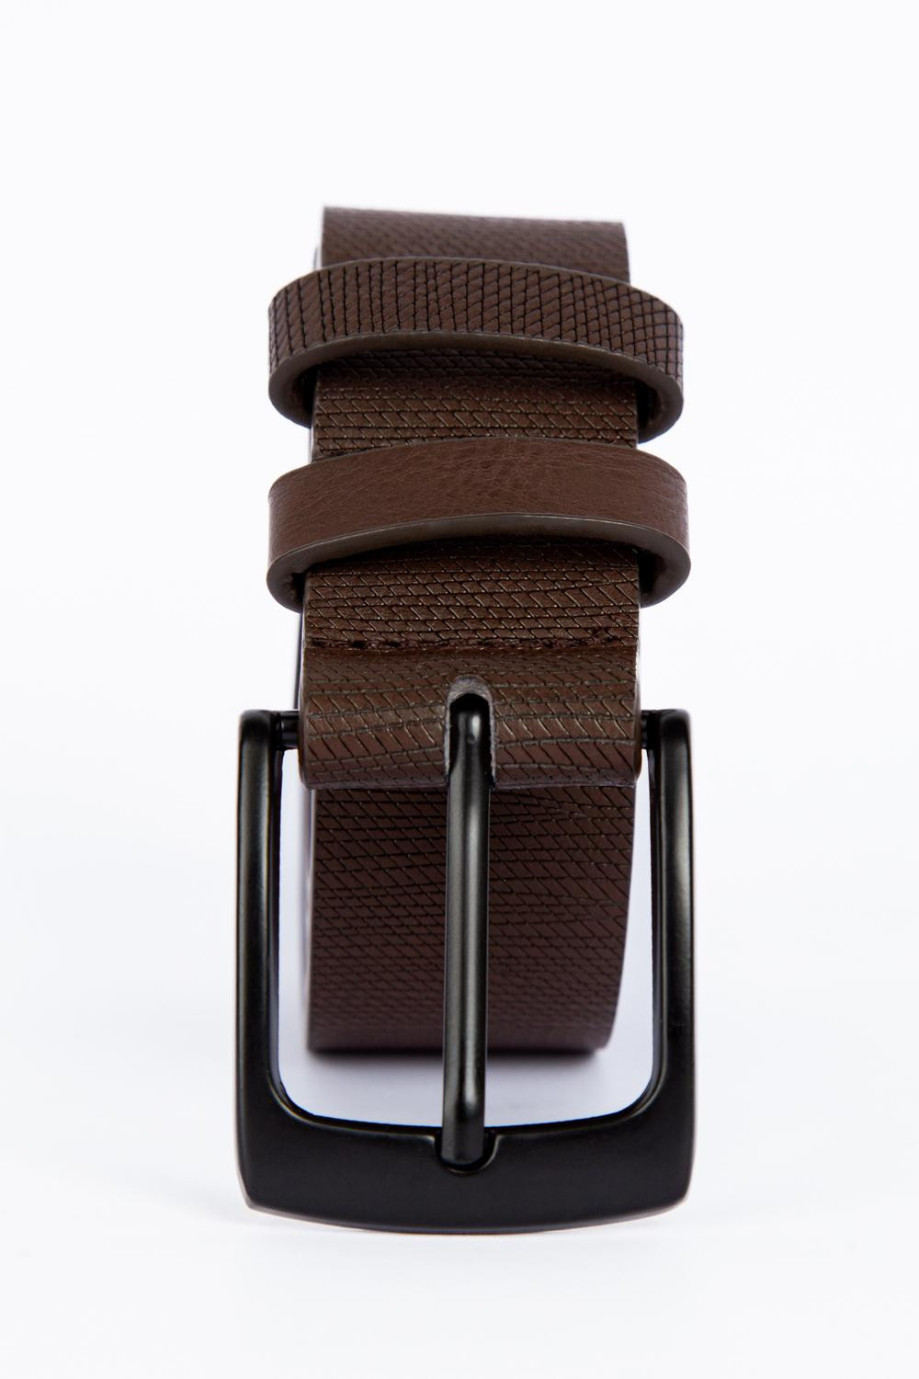 Cinturón unicolor con texturas y hebilla cuadrada metálica